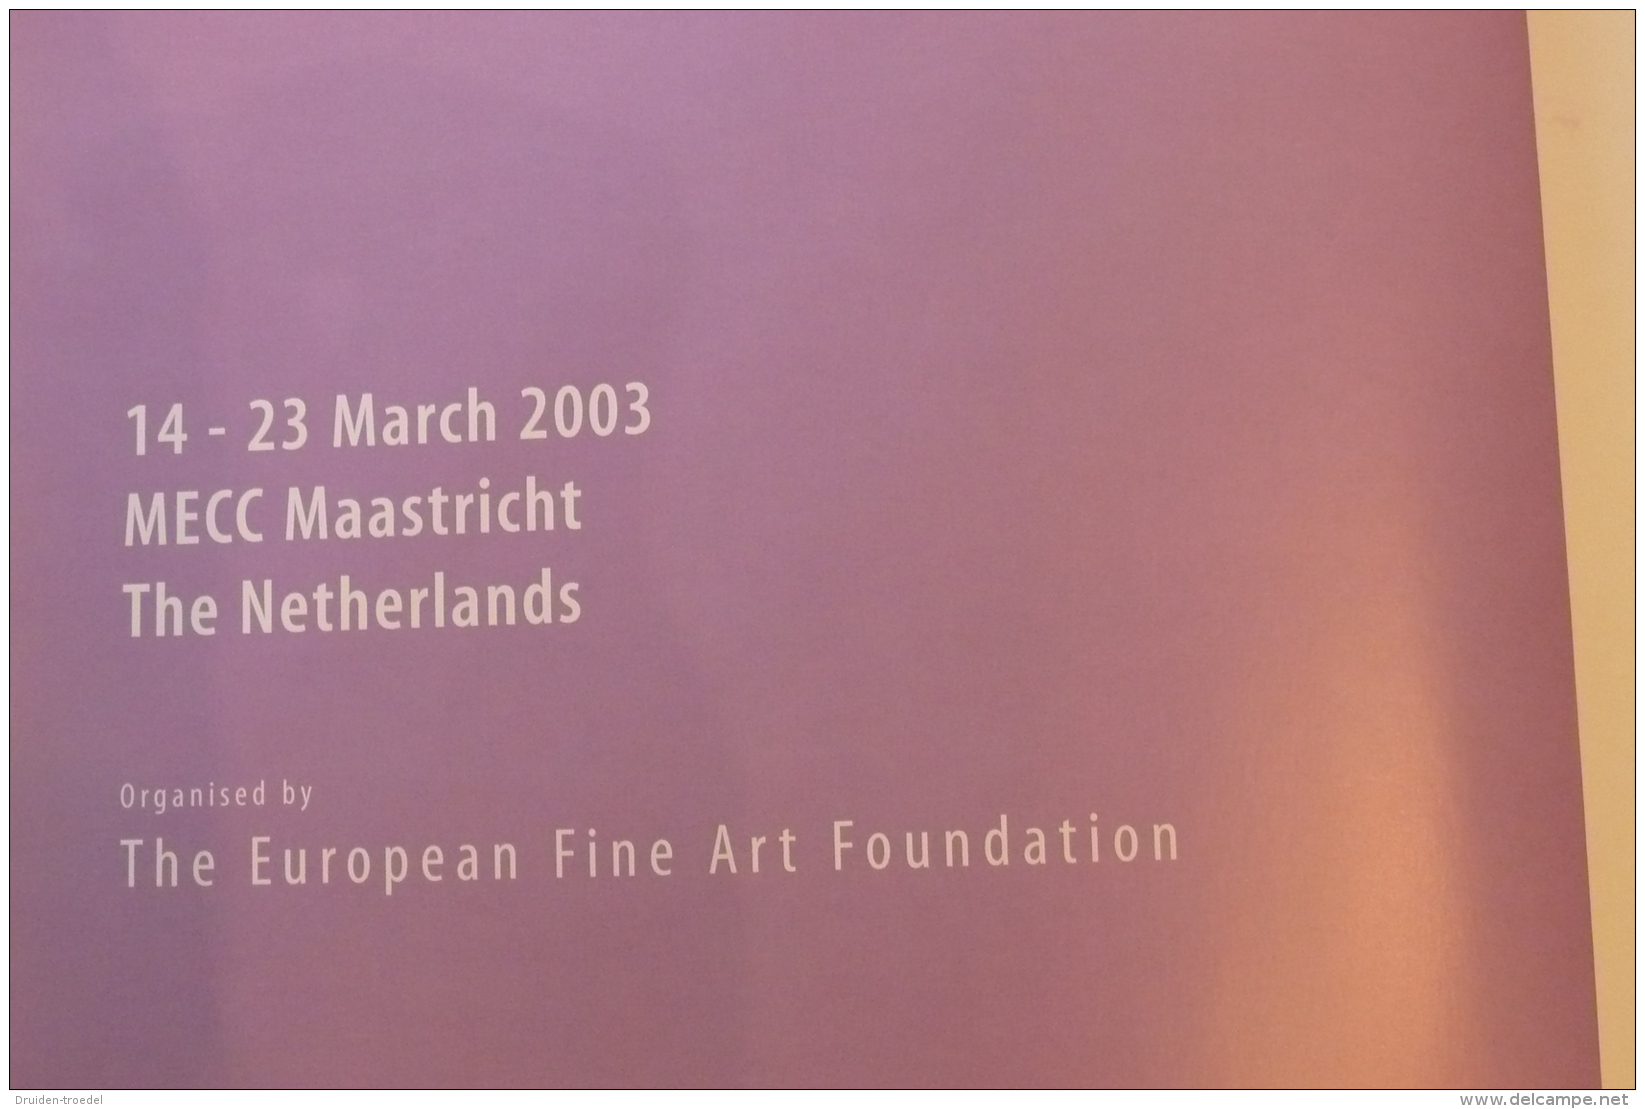 TEFAF MAASTRICHT 2003 - The European Fine Art Fair 2003. Handbook. - Themengebiet Sammeln